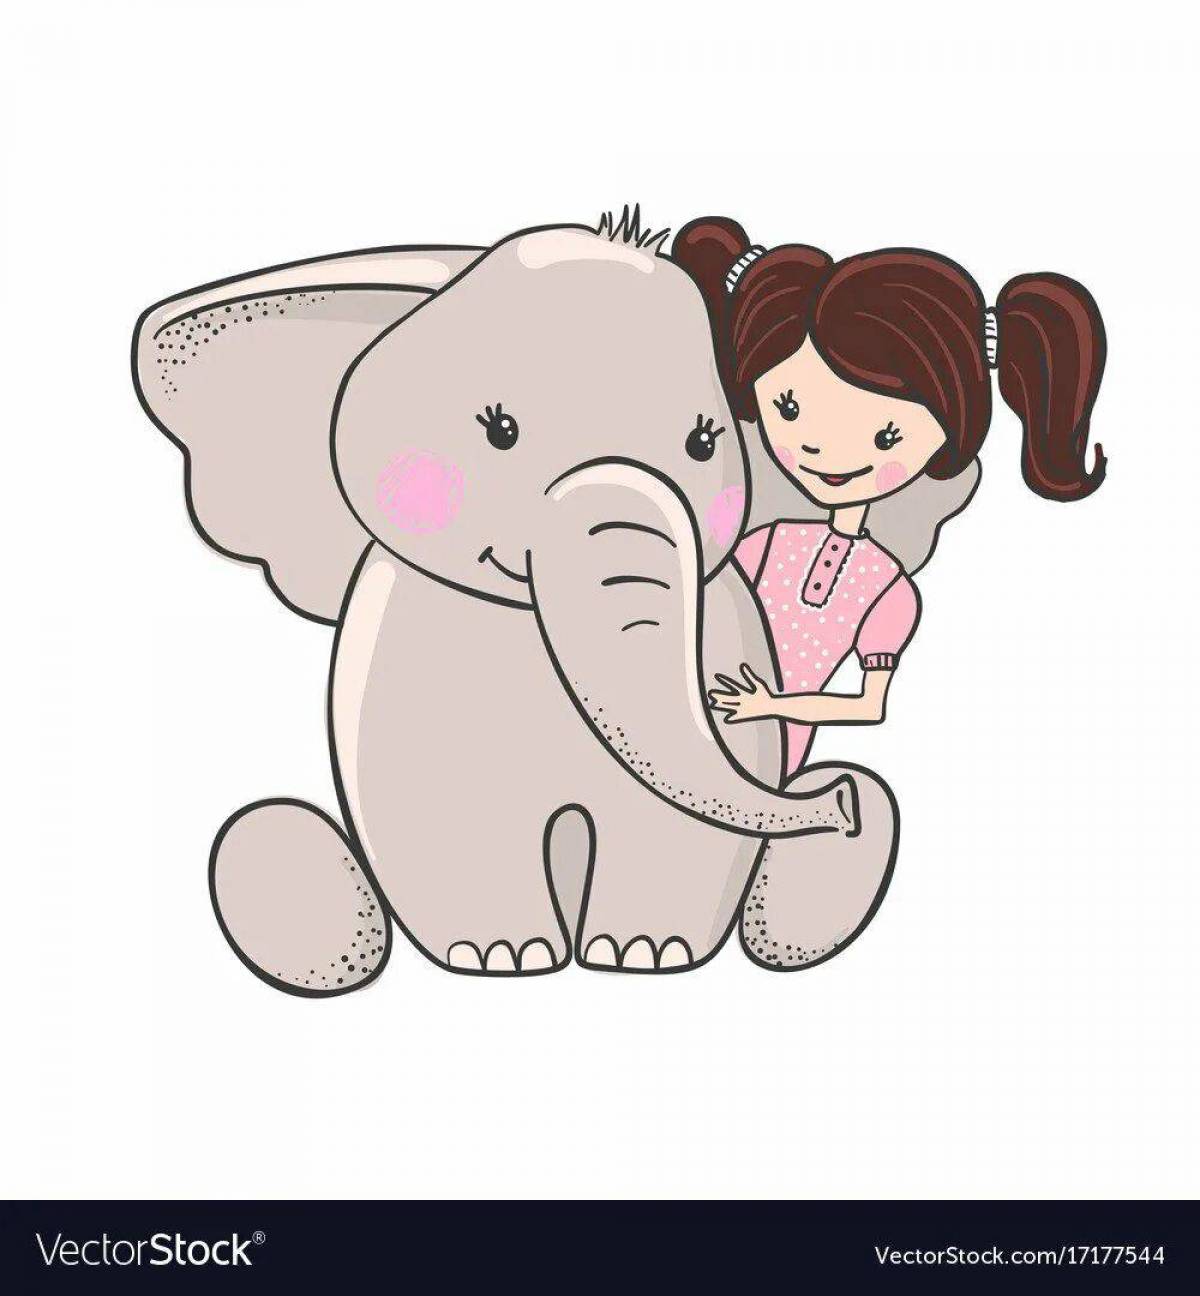 Слон и девочка #8